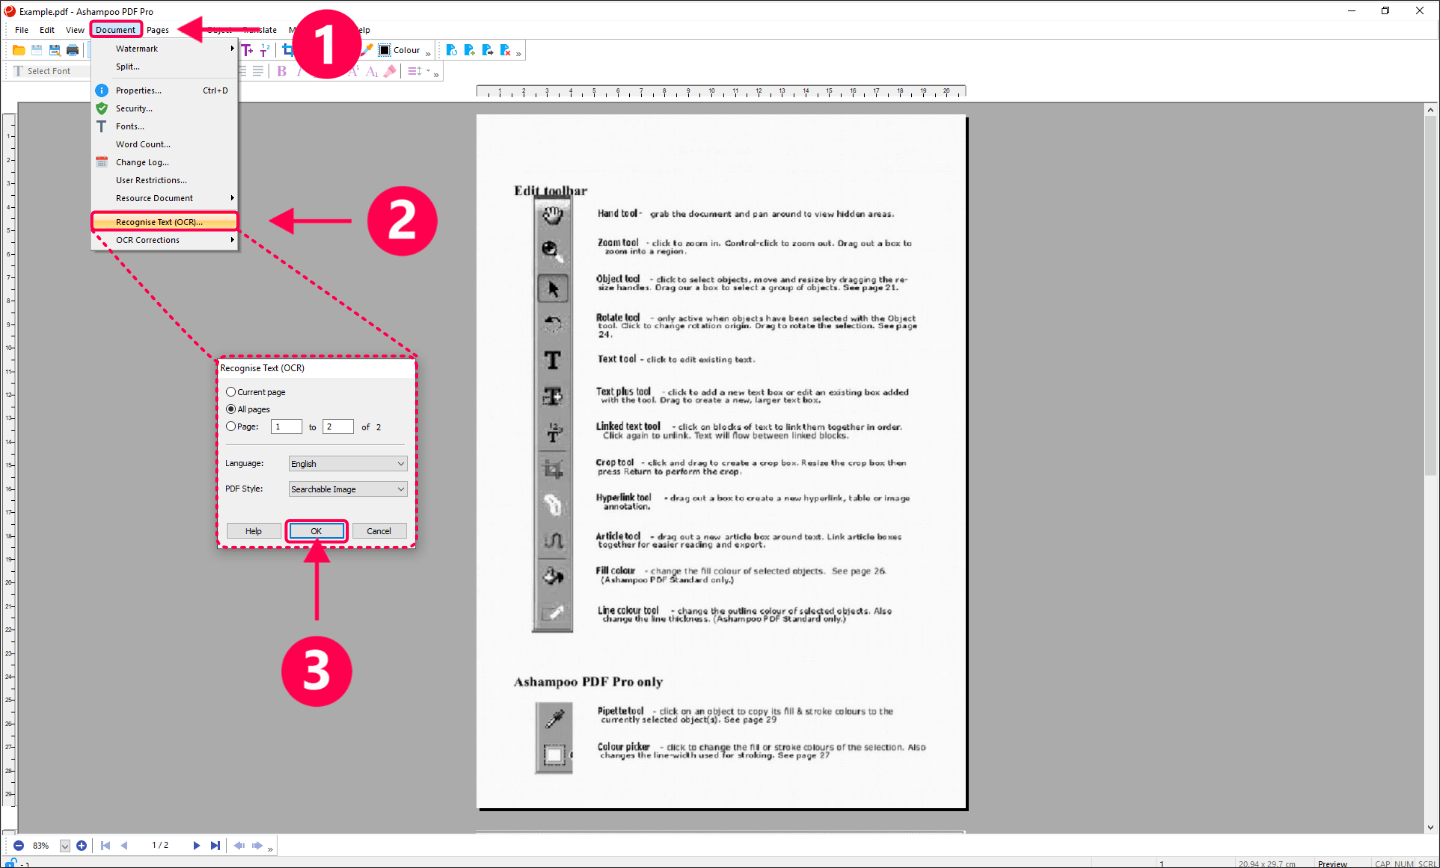 (11.73$) Ashampoo PDF Pro 3 Key (Lifetime / 1 PC)